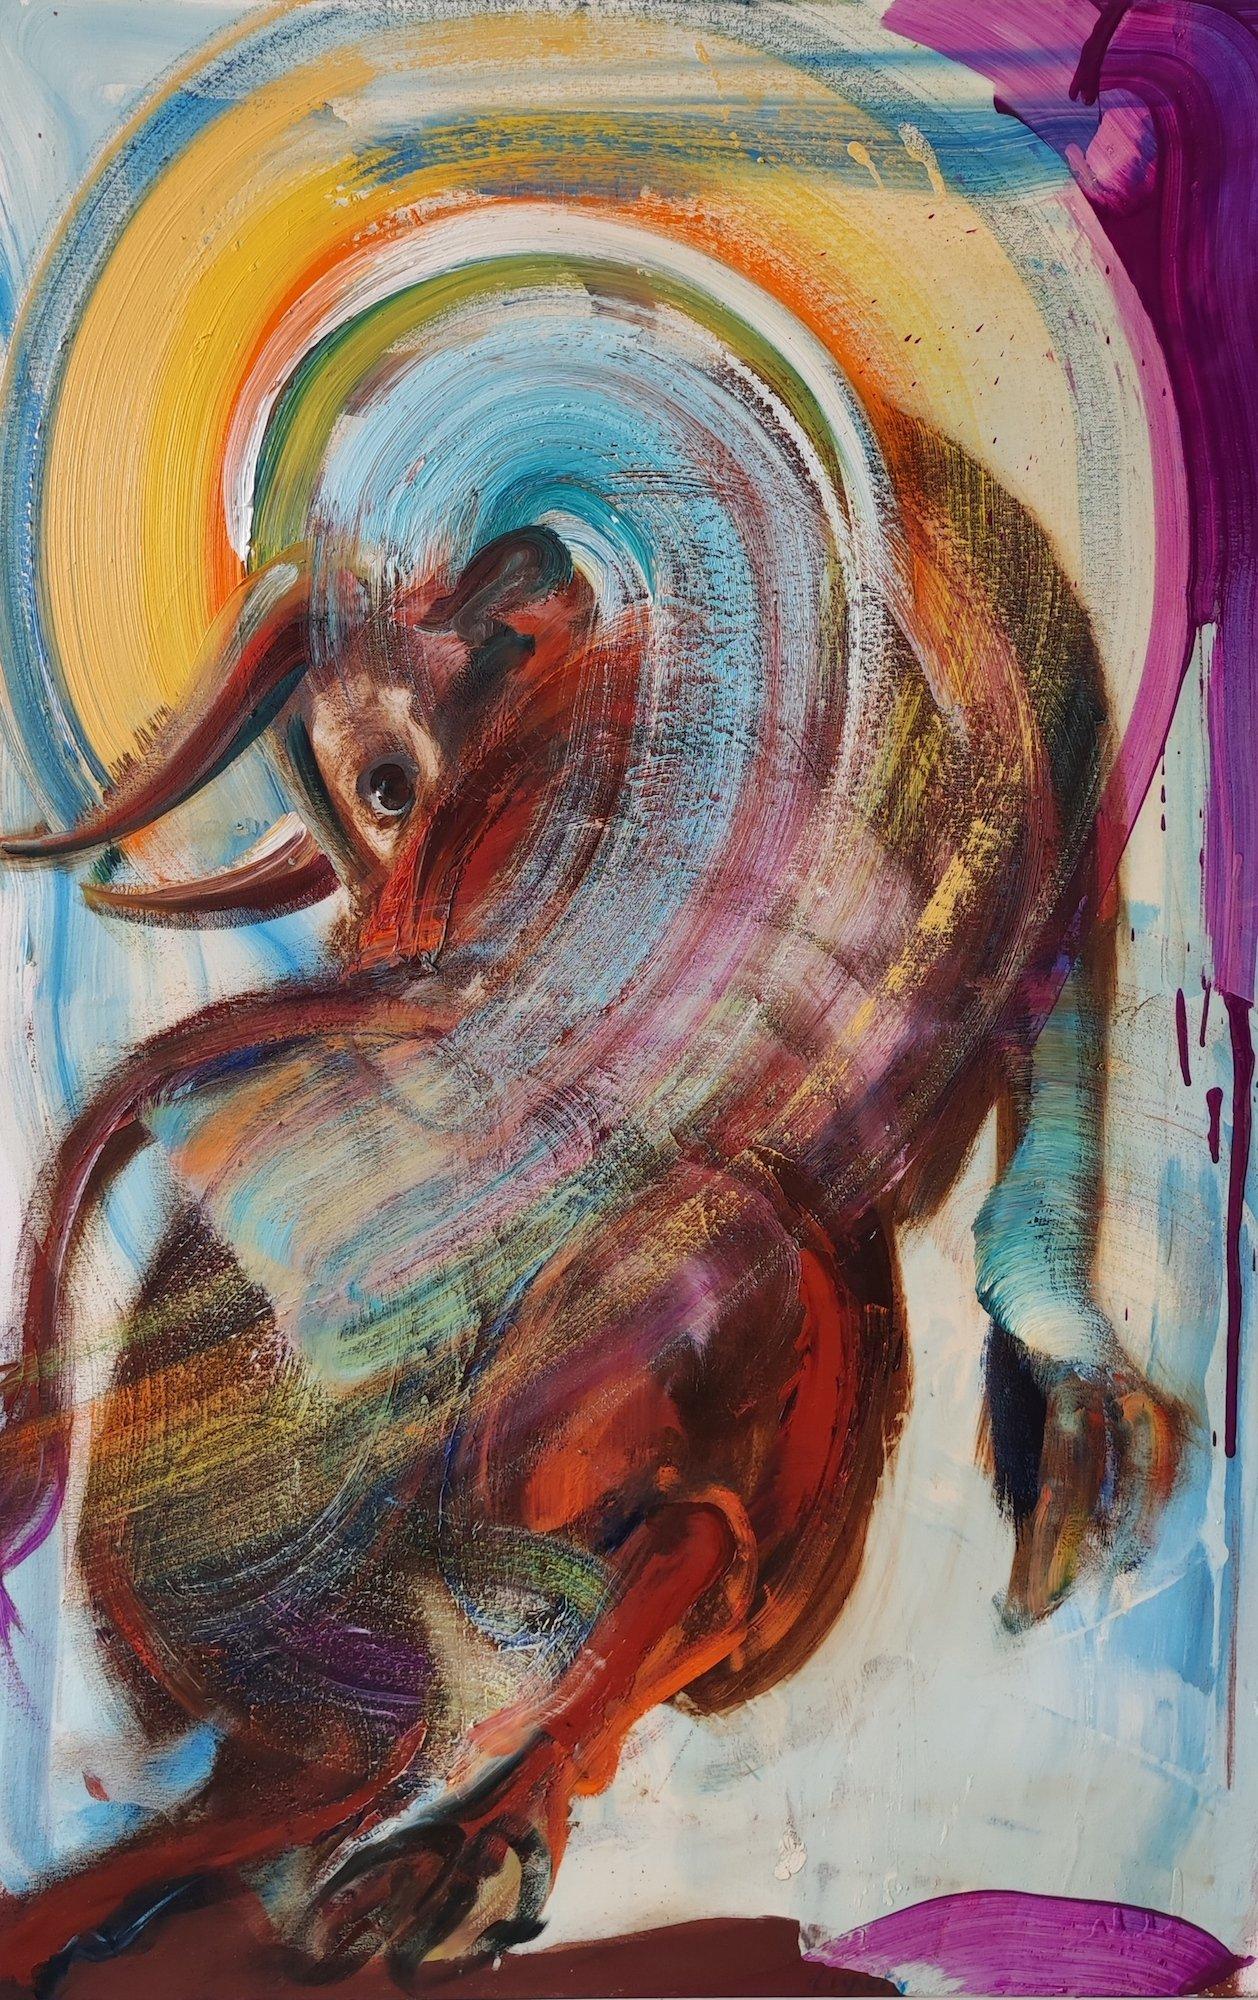 San Fermín (2023) des französischen zeitgenössischen Künstlers Christophe Dupety. Öl auf Leinwand, H 115 x B 75 cm // 45.2 in x 29.5 in.
Christophe Dupety konzentriert sich auf die Darstellung des Tieres, das im Mittelpunkt seiner Komposition steht.